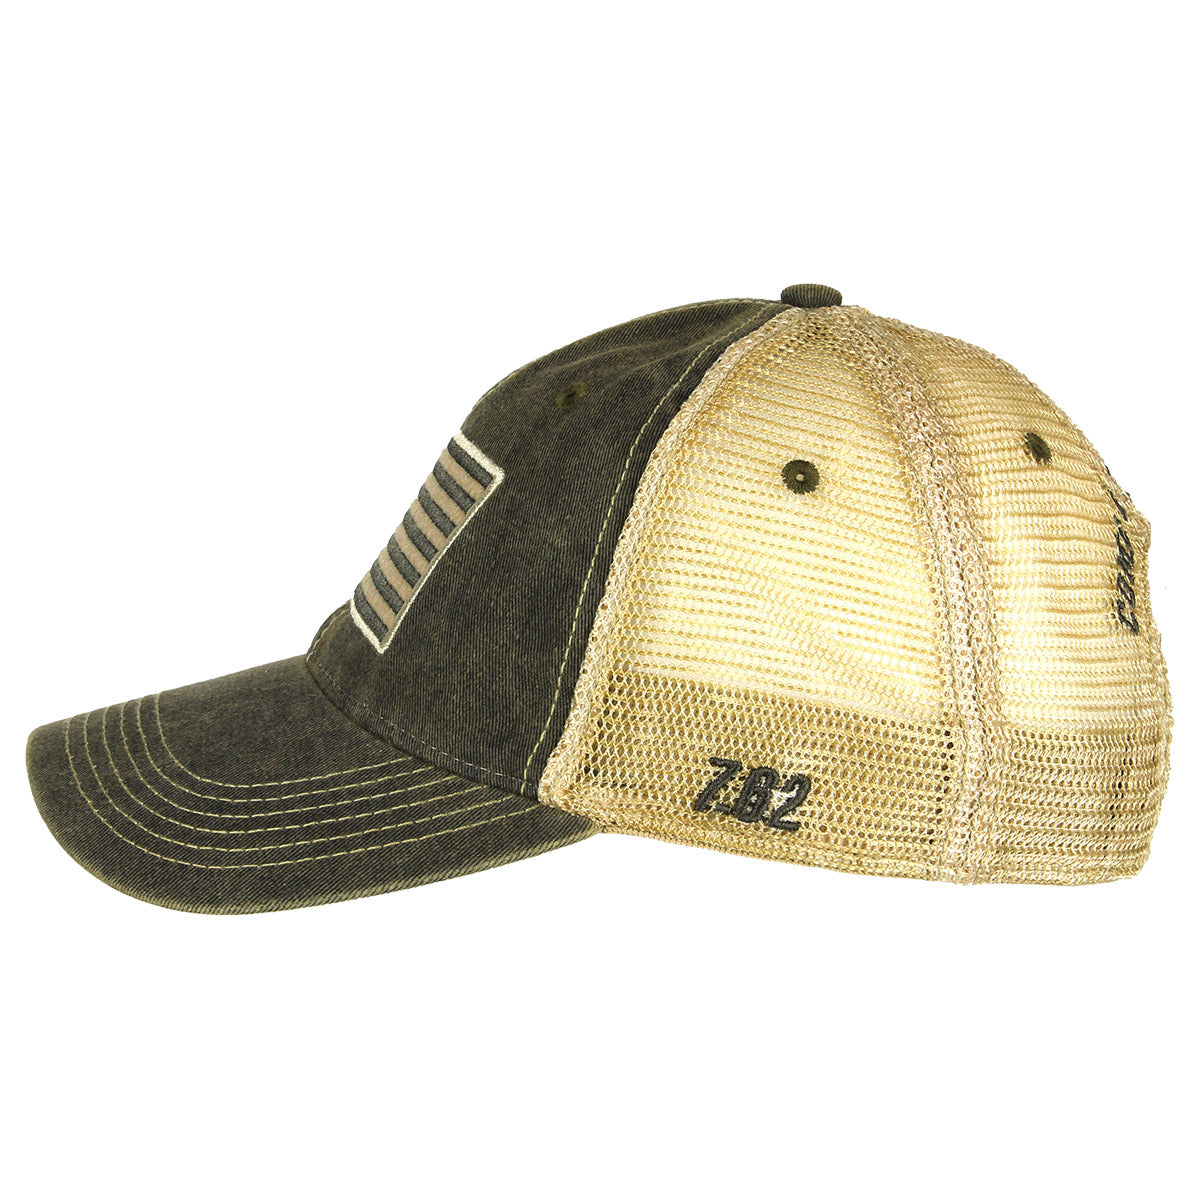 Tactical US Flag Vintage Trucker Hat — 7.62 Design